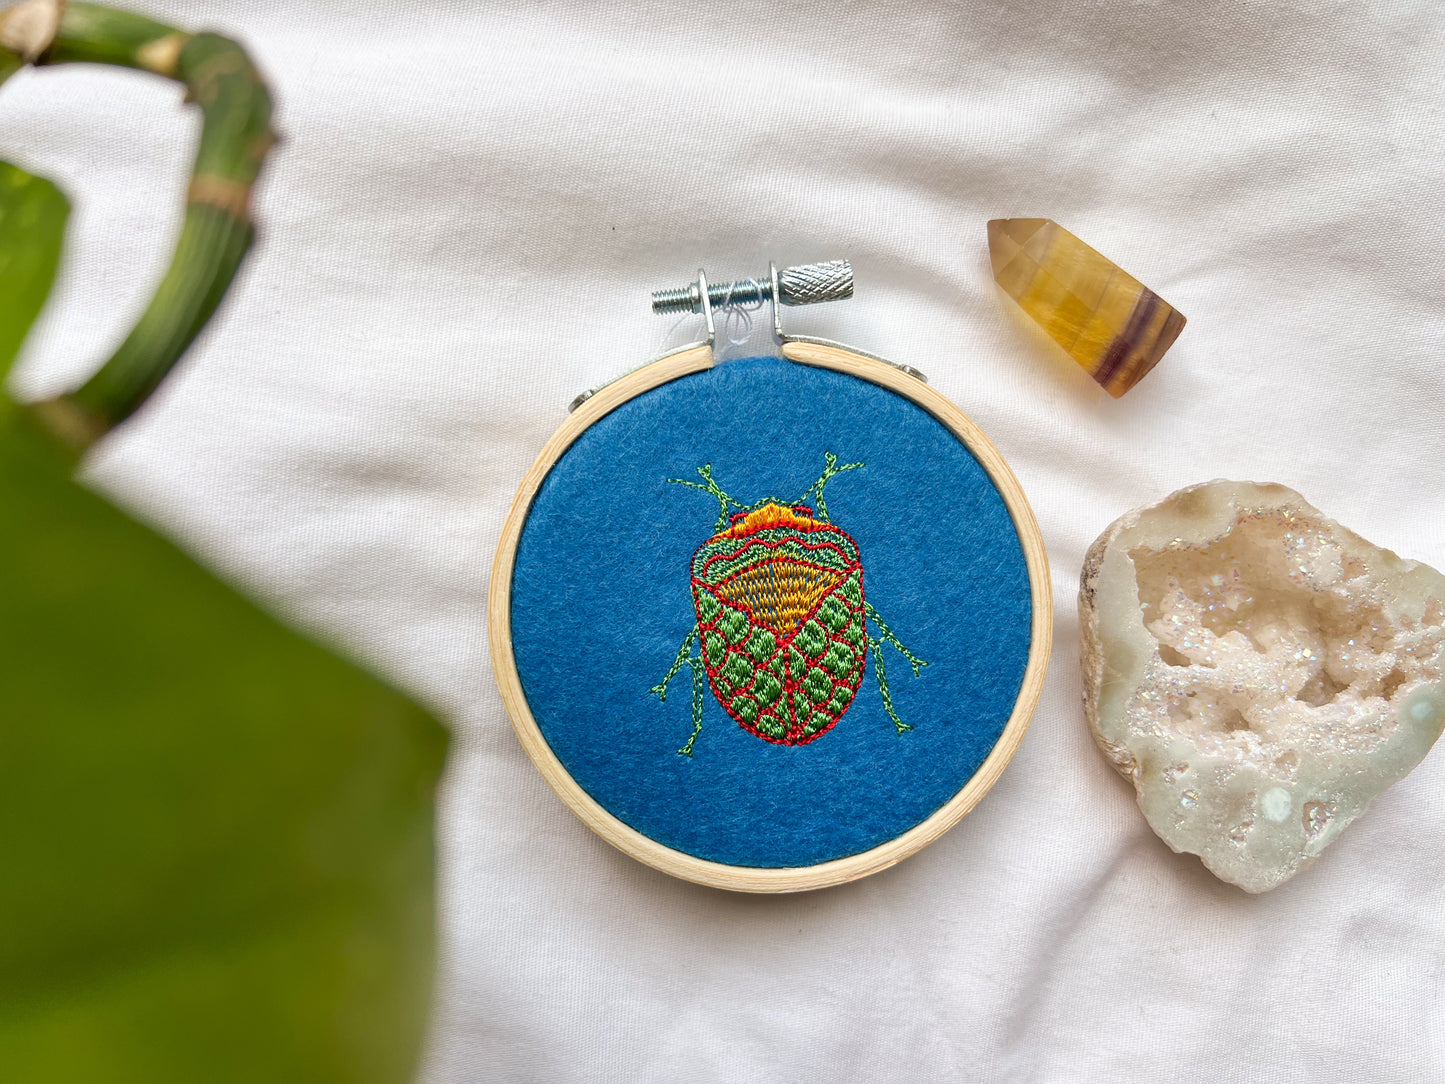 mini neon bugs embroidery hoop